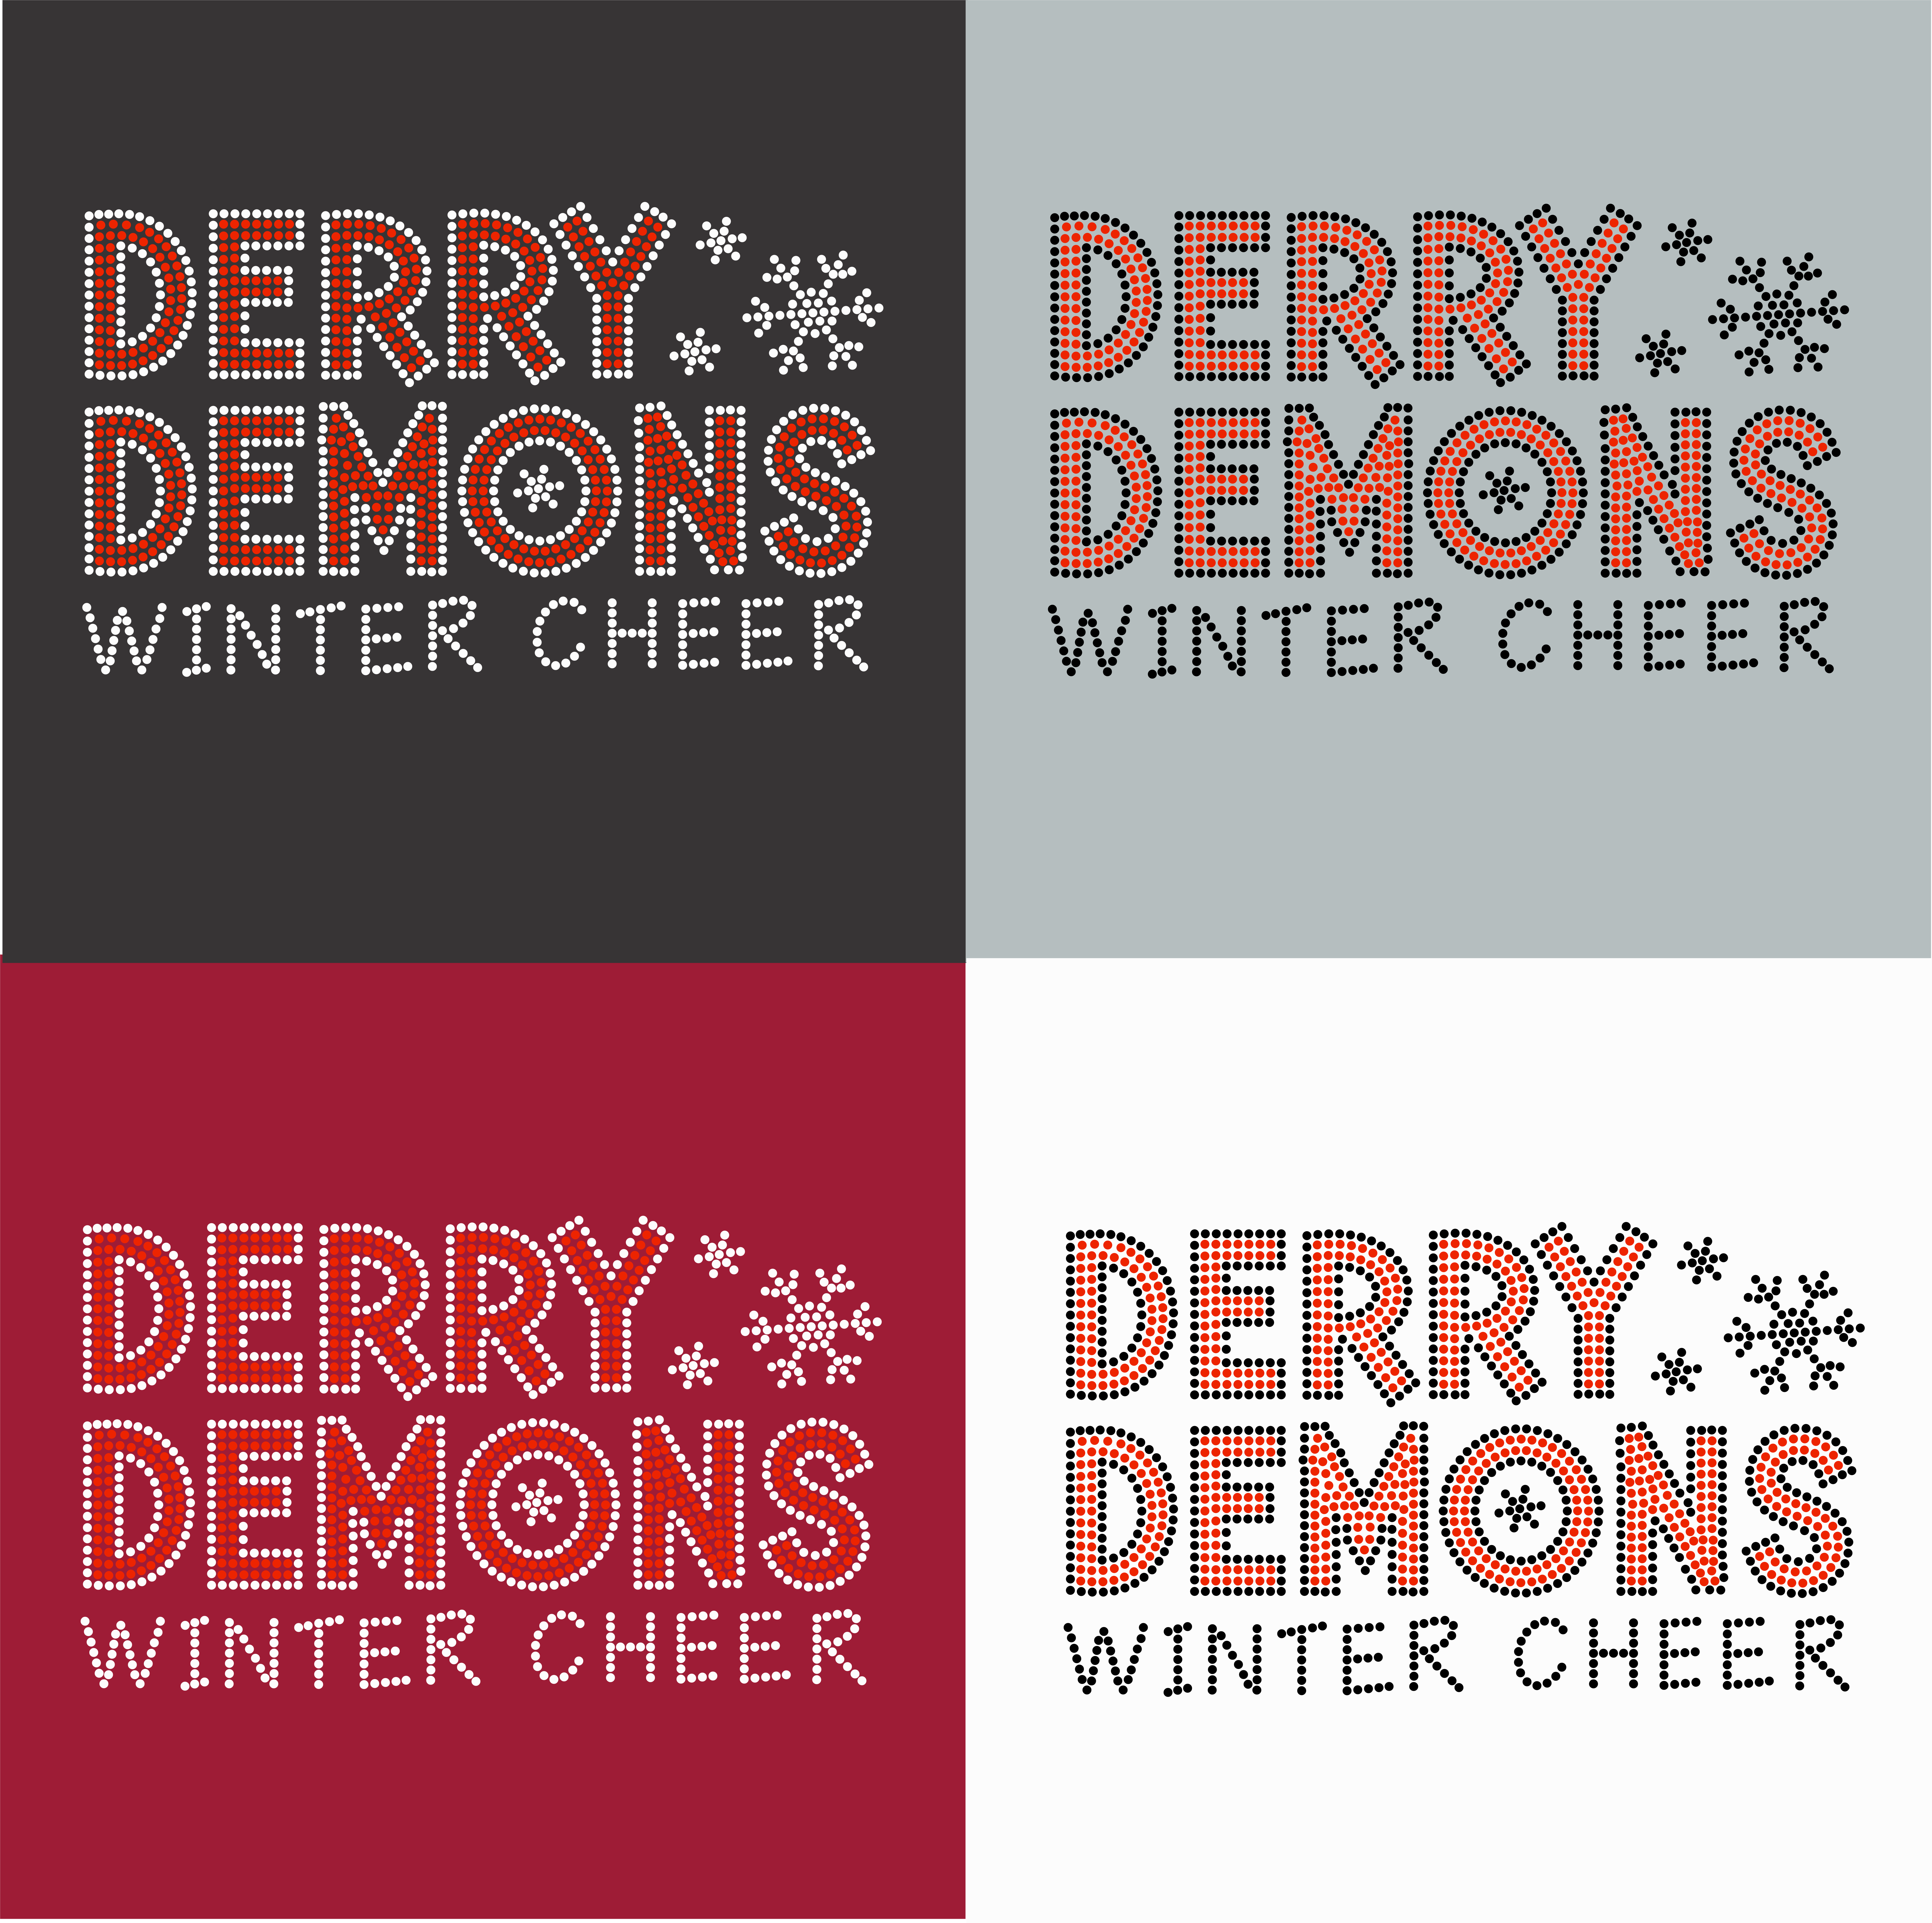 Derry Demons Winter Cheer